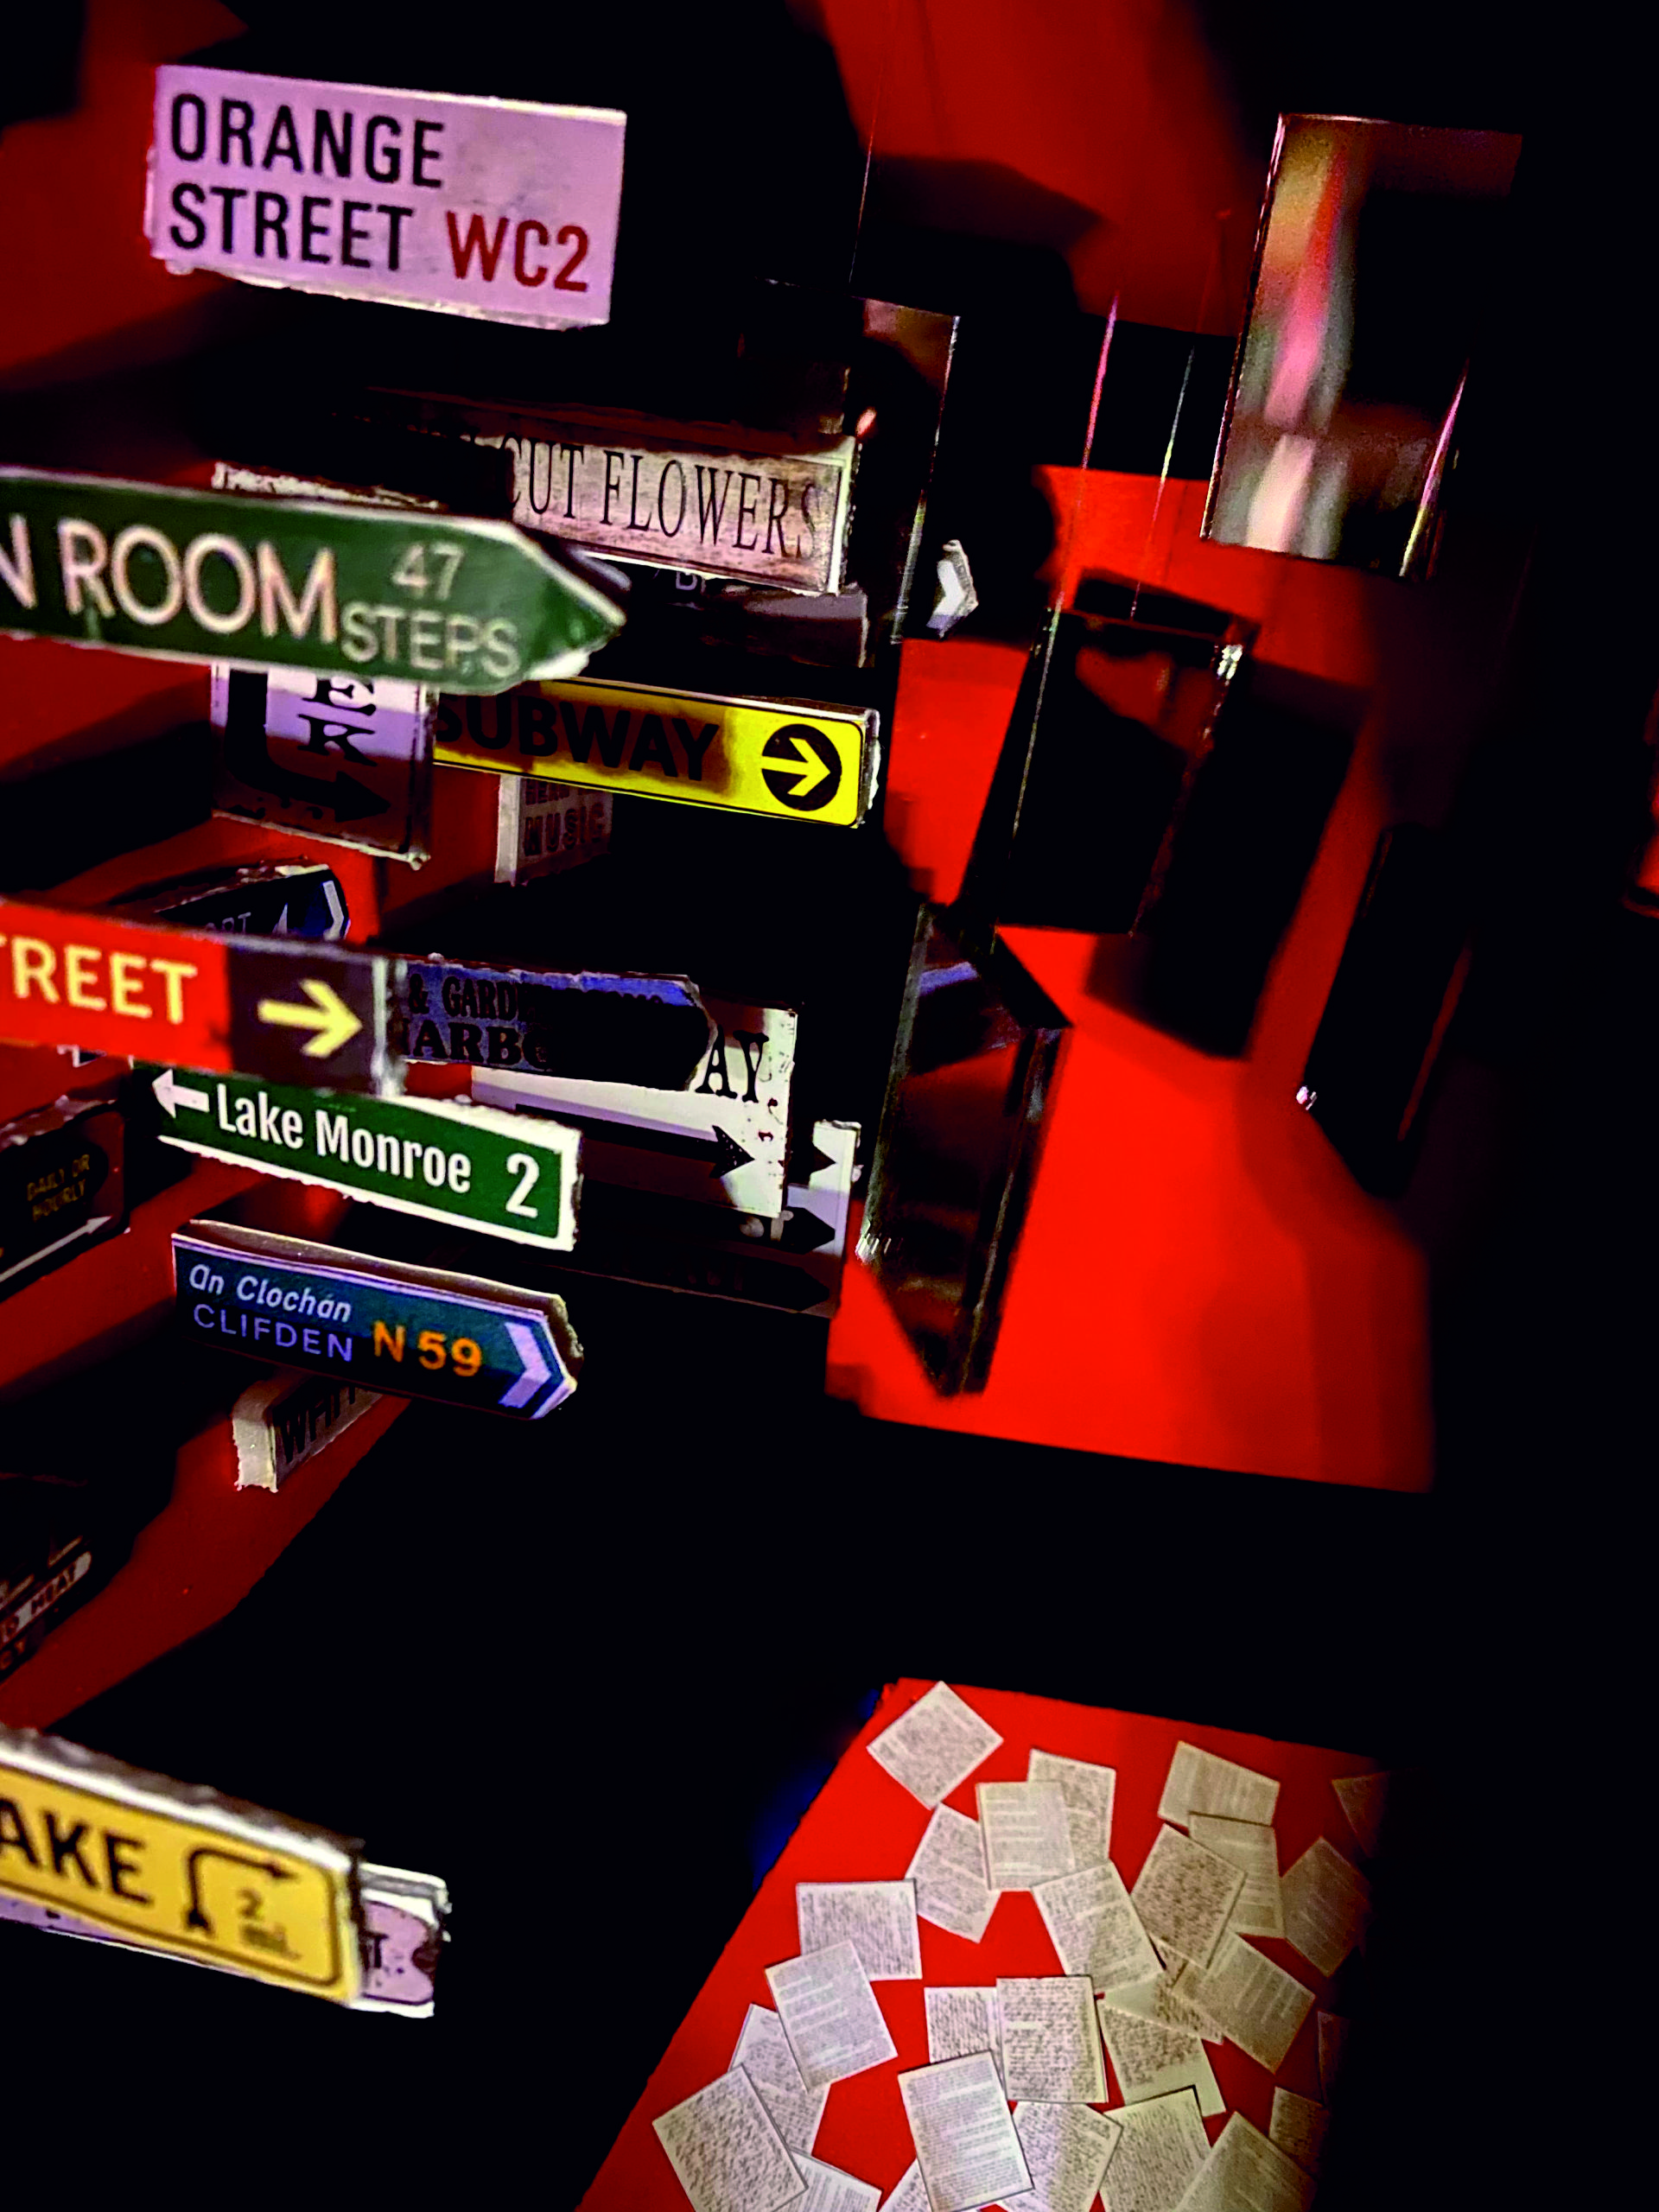 Czerwono-czarna przestrzeń wypełniona lustrami, kartkami z gazet i znakami drogowymi. W środku postać.